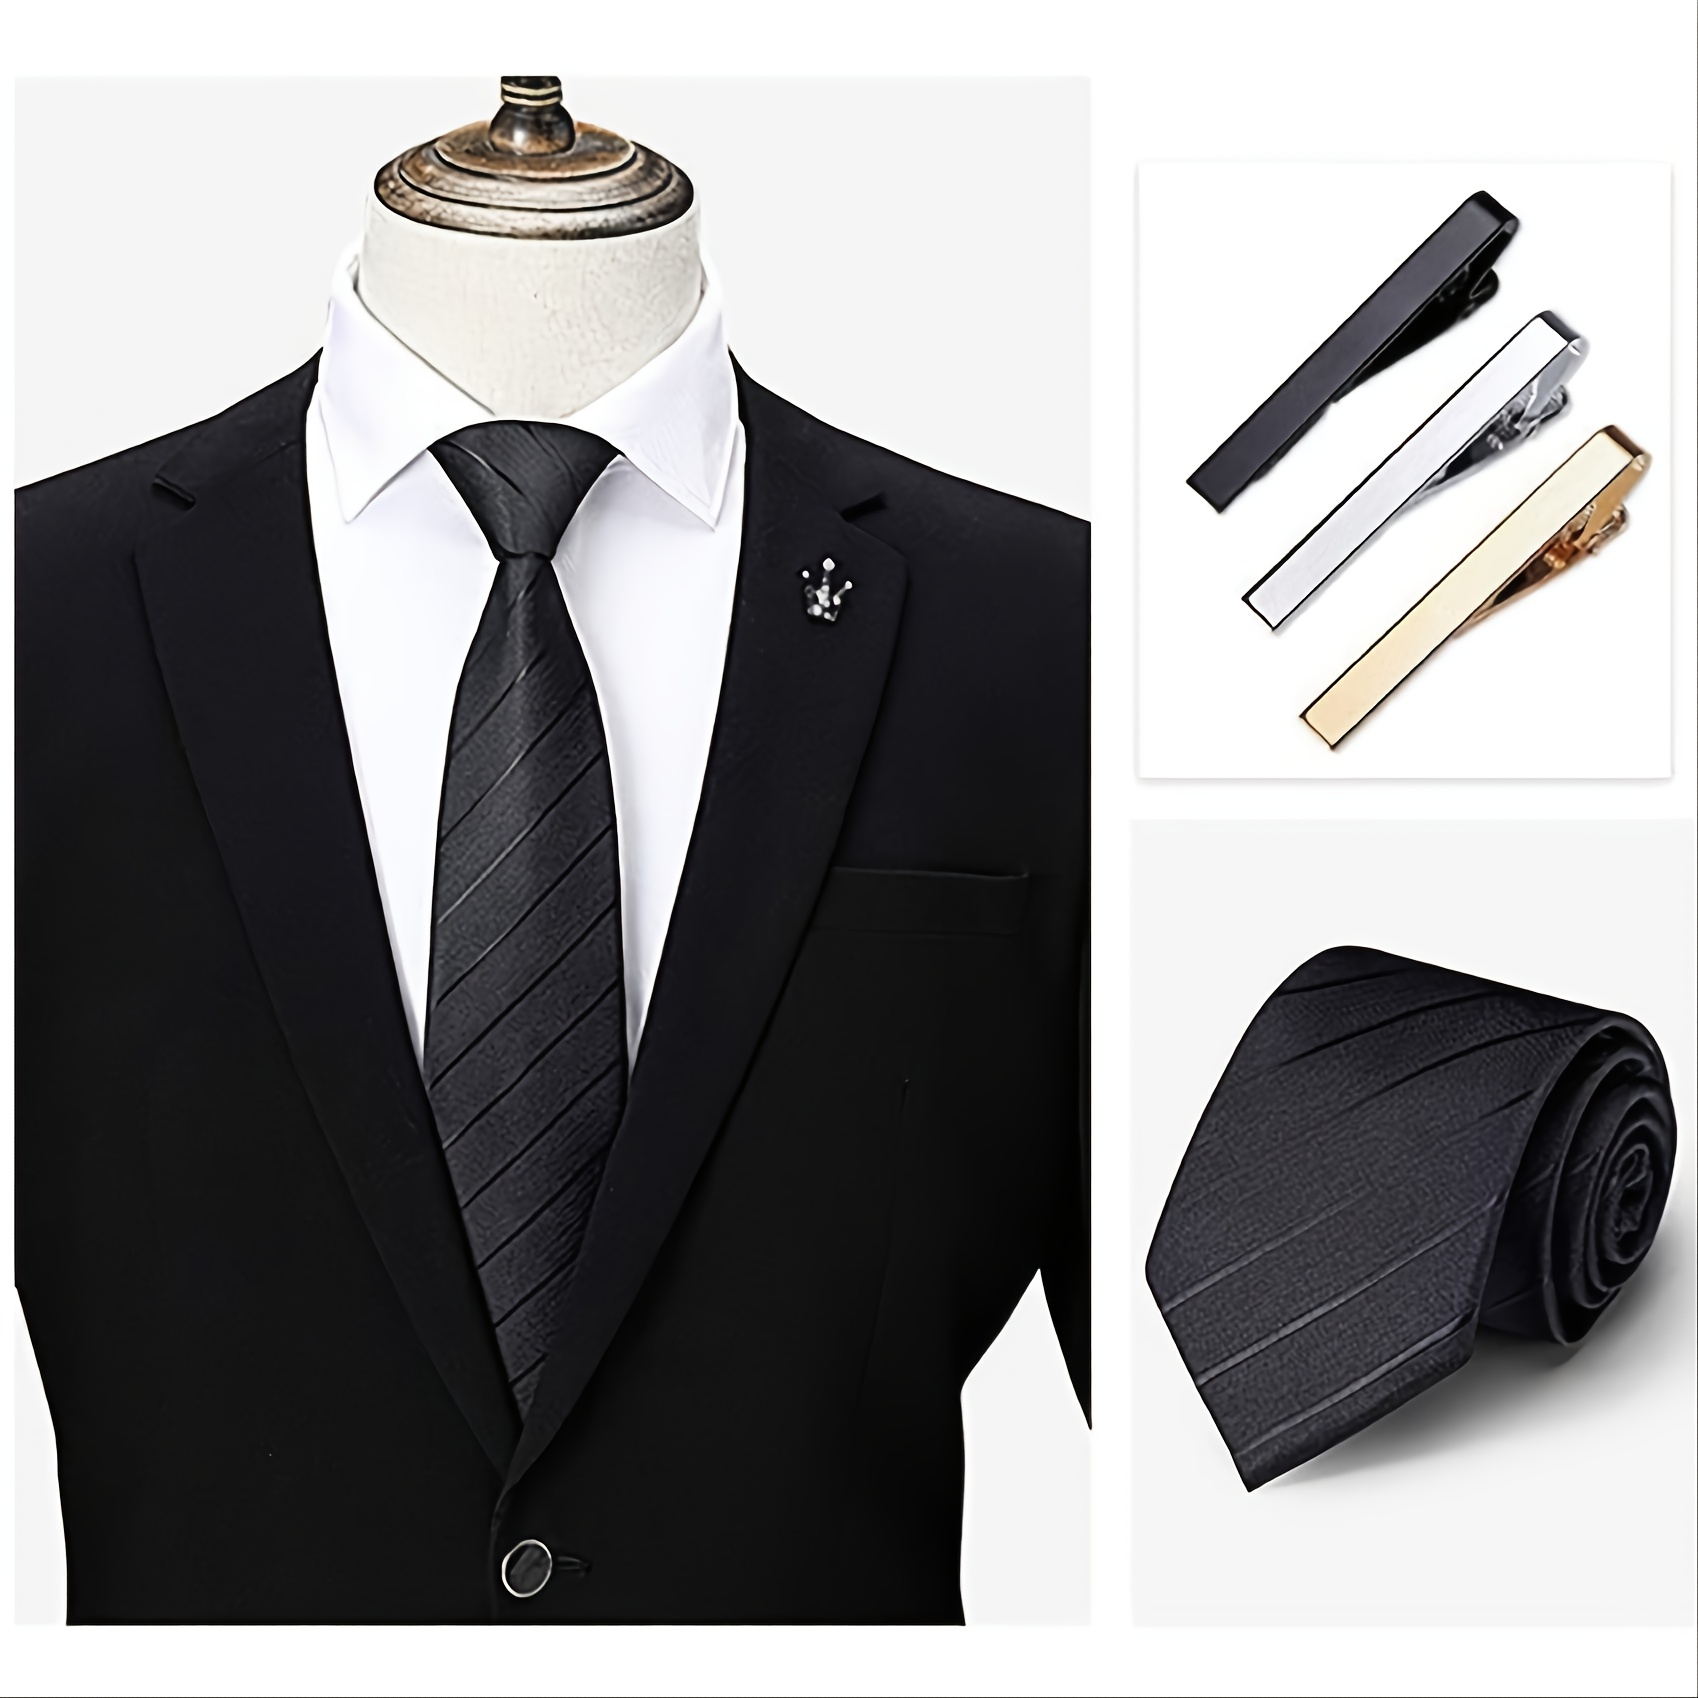 Coxeer Tie Clip Fashionable Leaf Shape Tie Bar Clip Tie Clip Pin Business  Tie Clip for Men